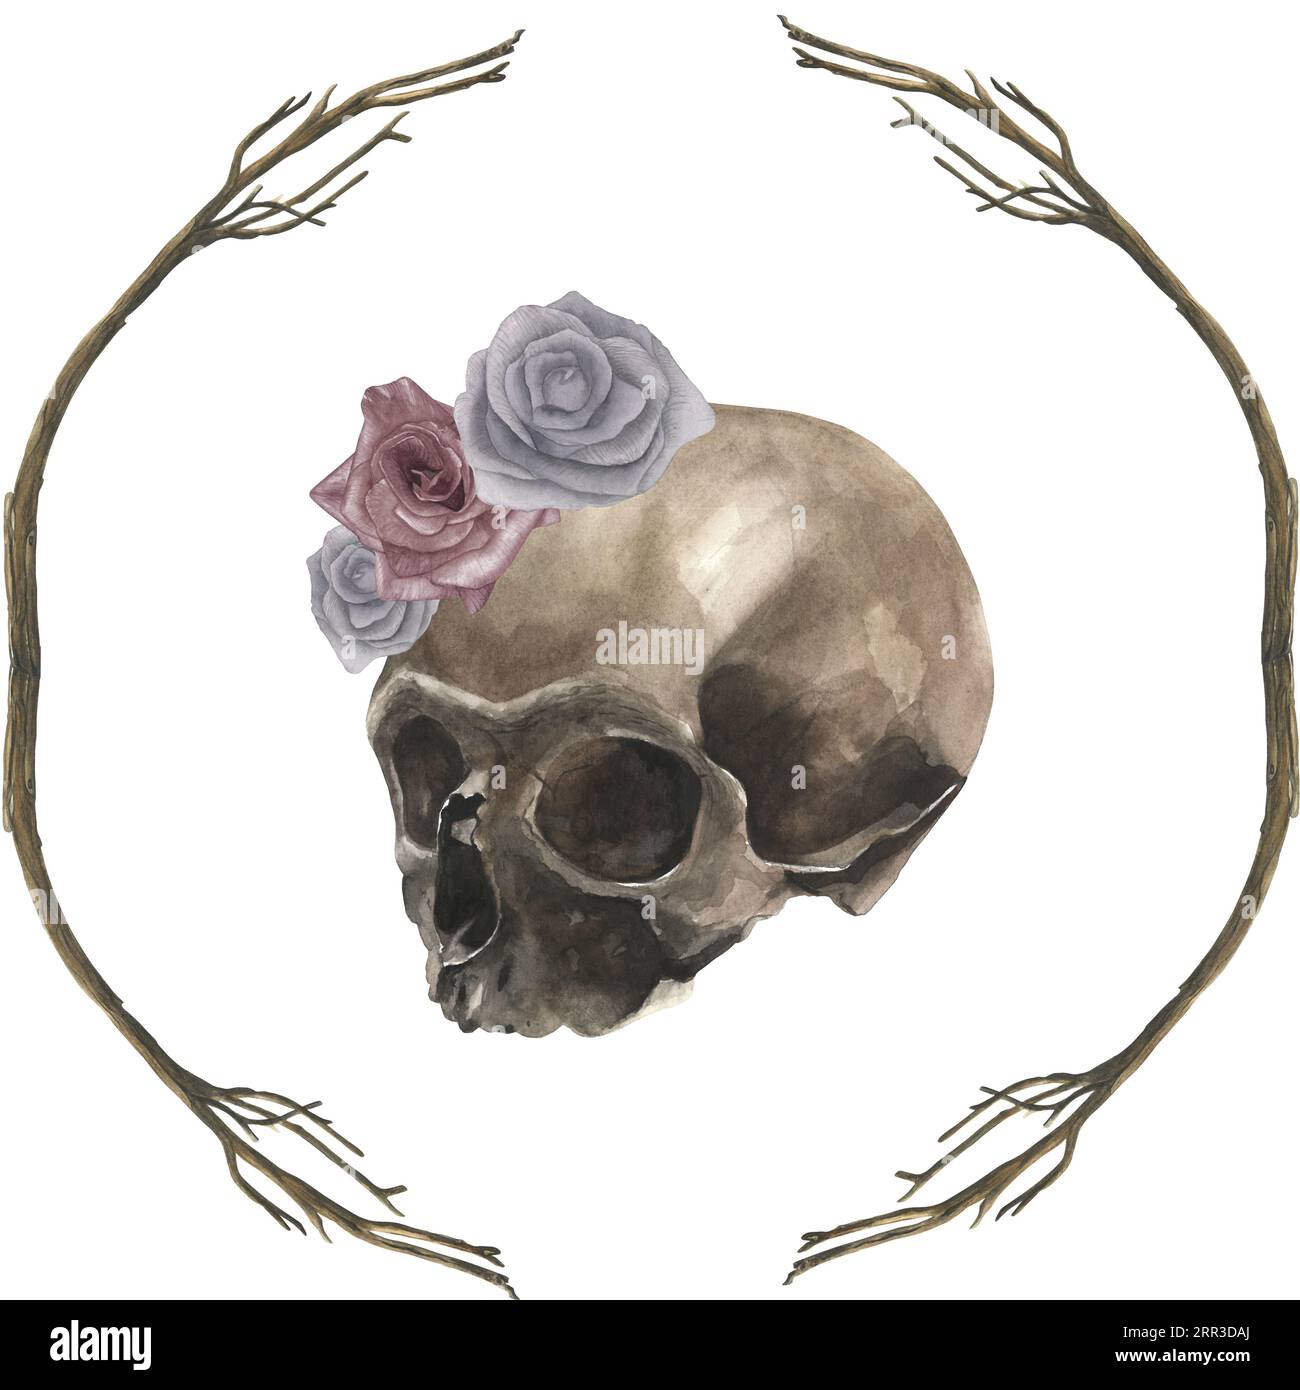 Illustration à l'aquarelle d'un crâne, de roses et de branches sèches. Dessiné à la main, isolé sur fond blanc Banque D'Images